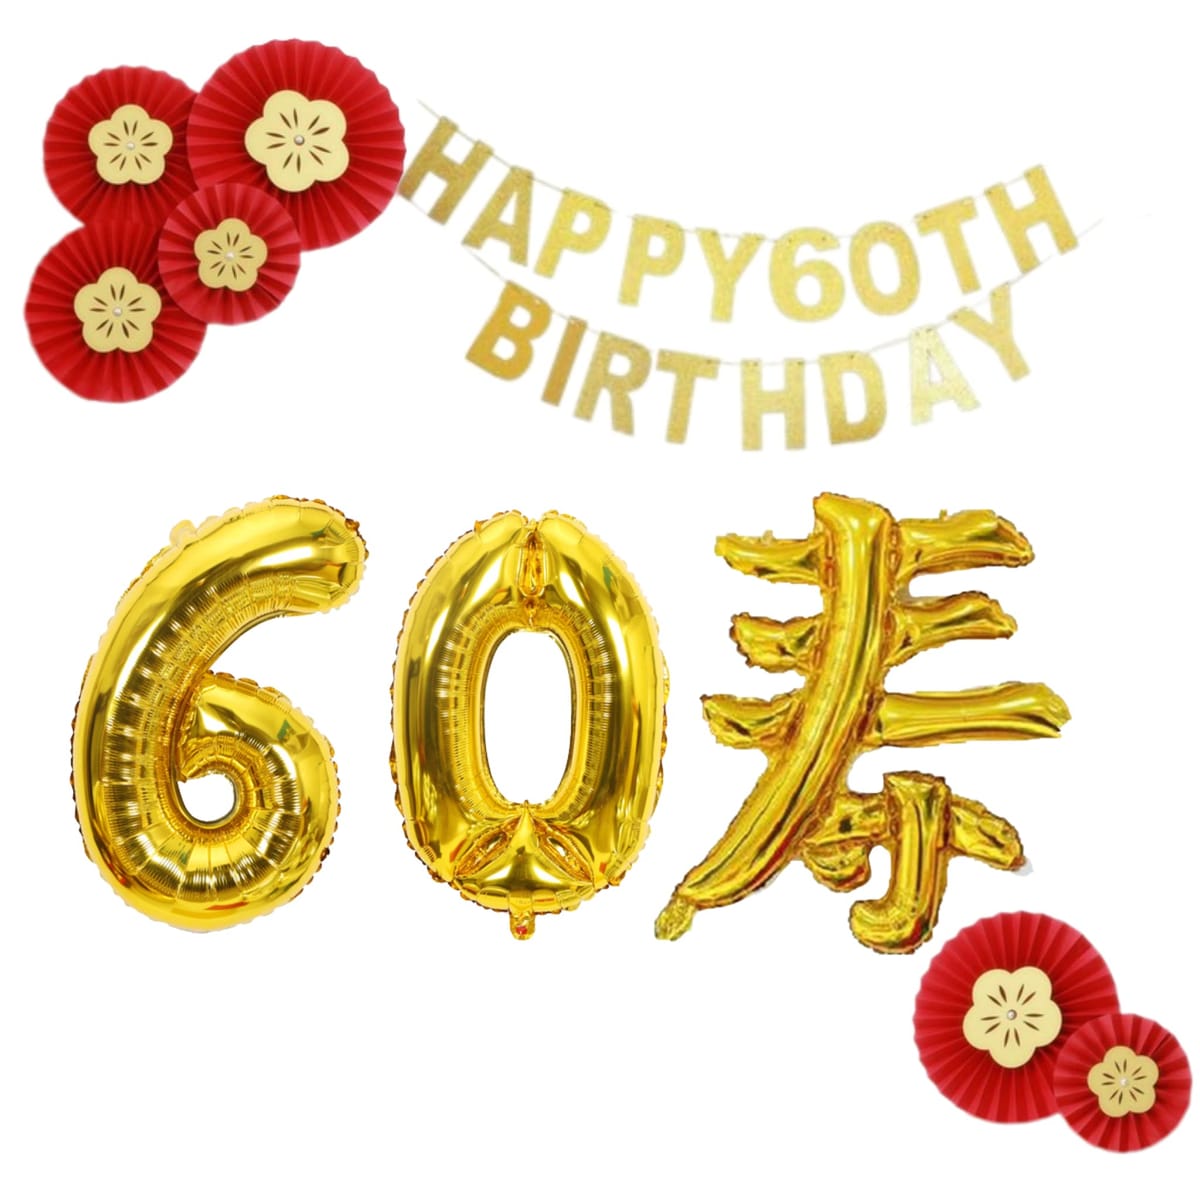 Golspia 還暦 祝い 飾り バルーン アート 風船 メタリック ガーランド 誕生日 セット